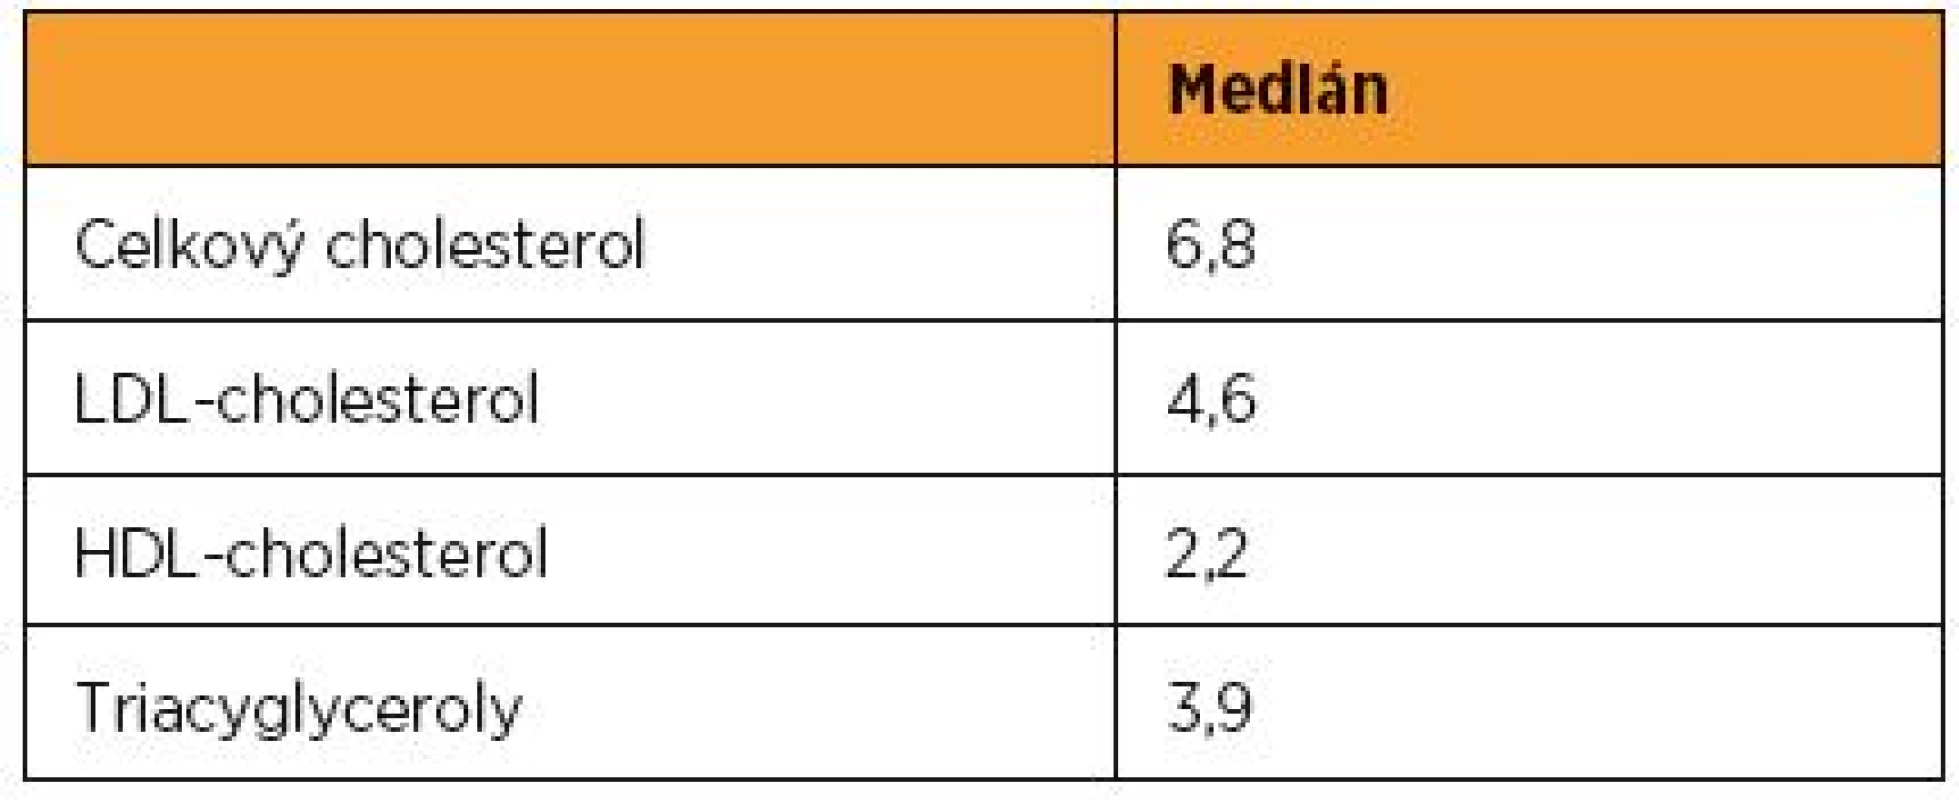 Mediány klasických lipidových parametrů (mmol/l) v souboru 21 000 zdravých těhotných z ÚPMD (2014–2016)